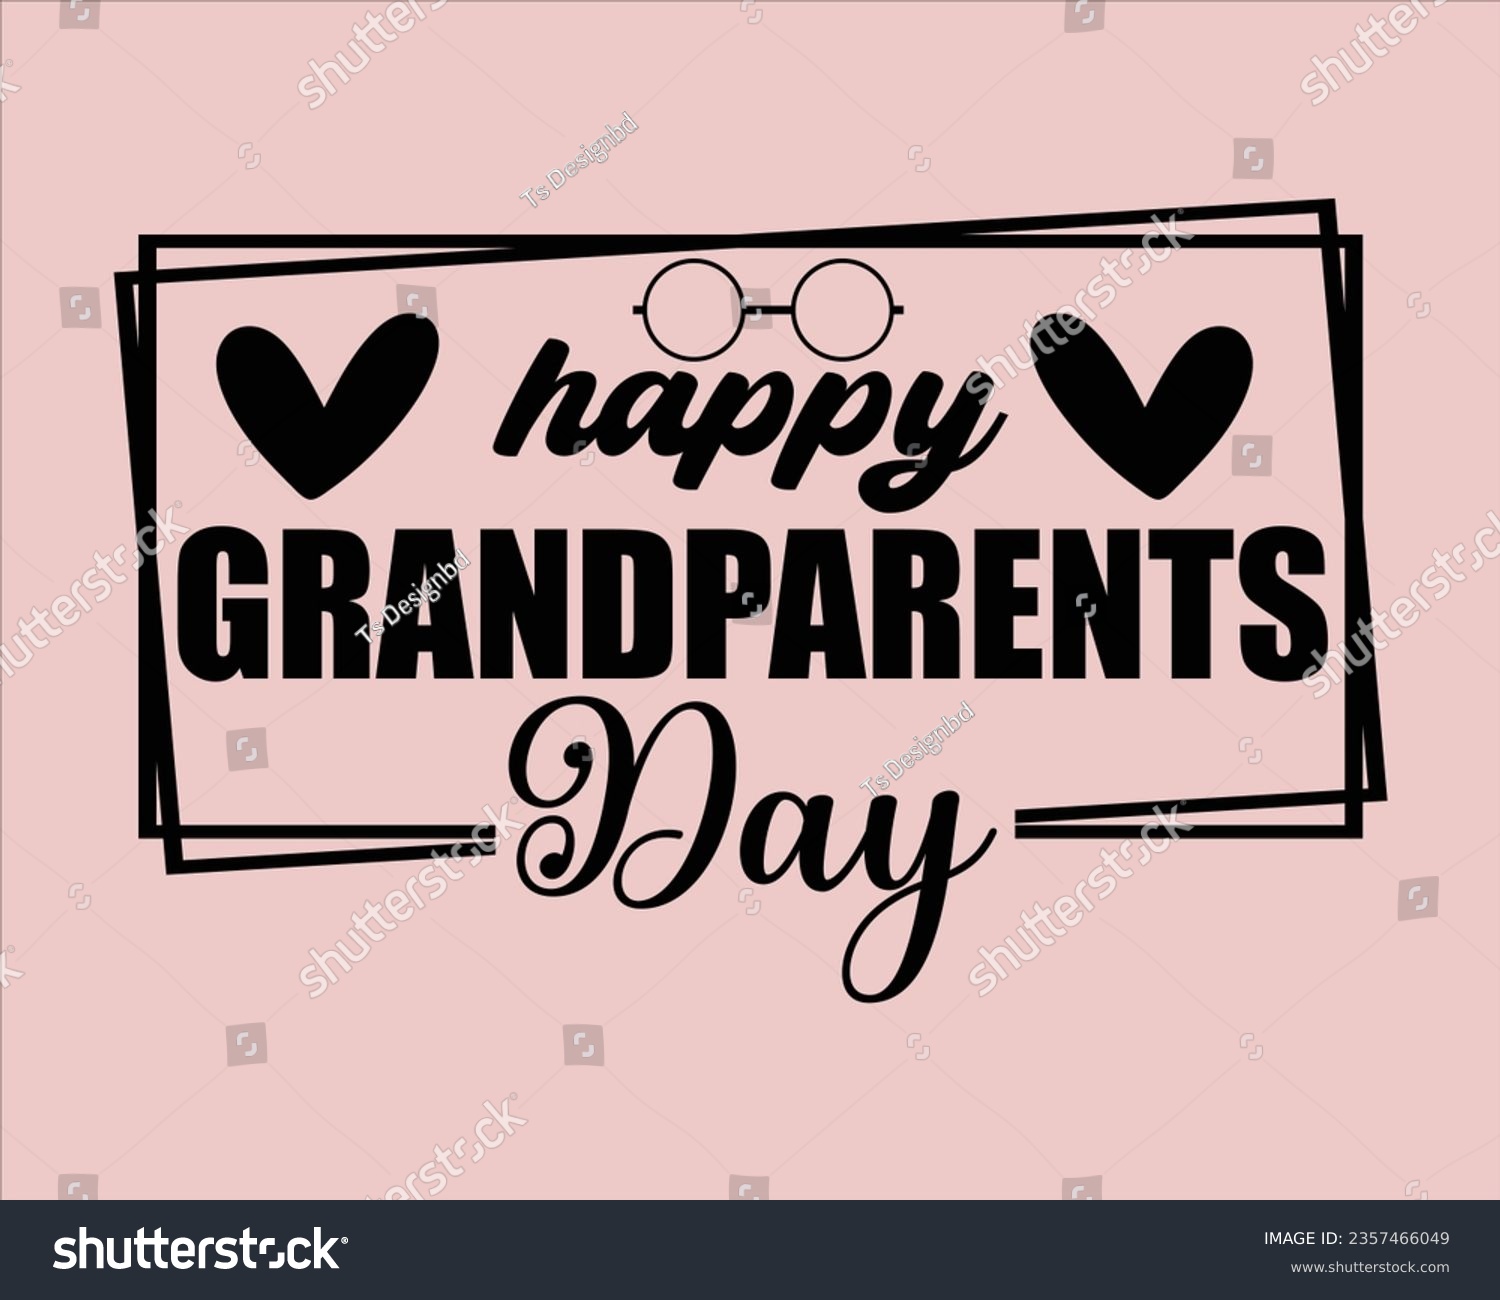 SVG of Grandparents Day Svg Design, Best Grandma svg,grandparents T Shirt Design,Grandpa svg, Grandparents svg,Grandma svg,grandparents day Design, svg